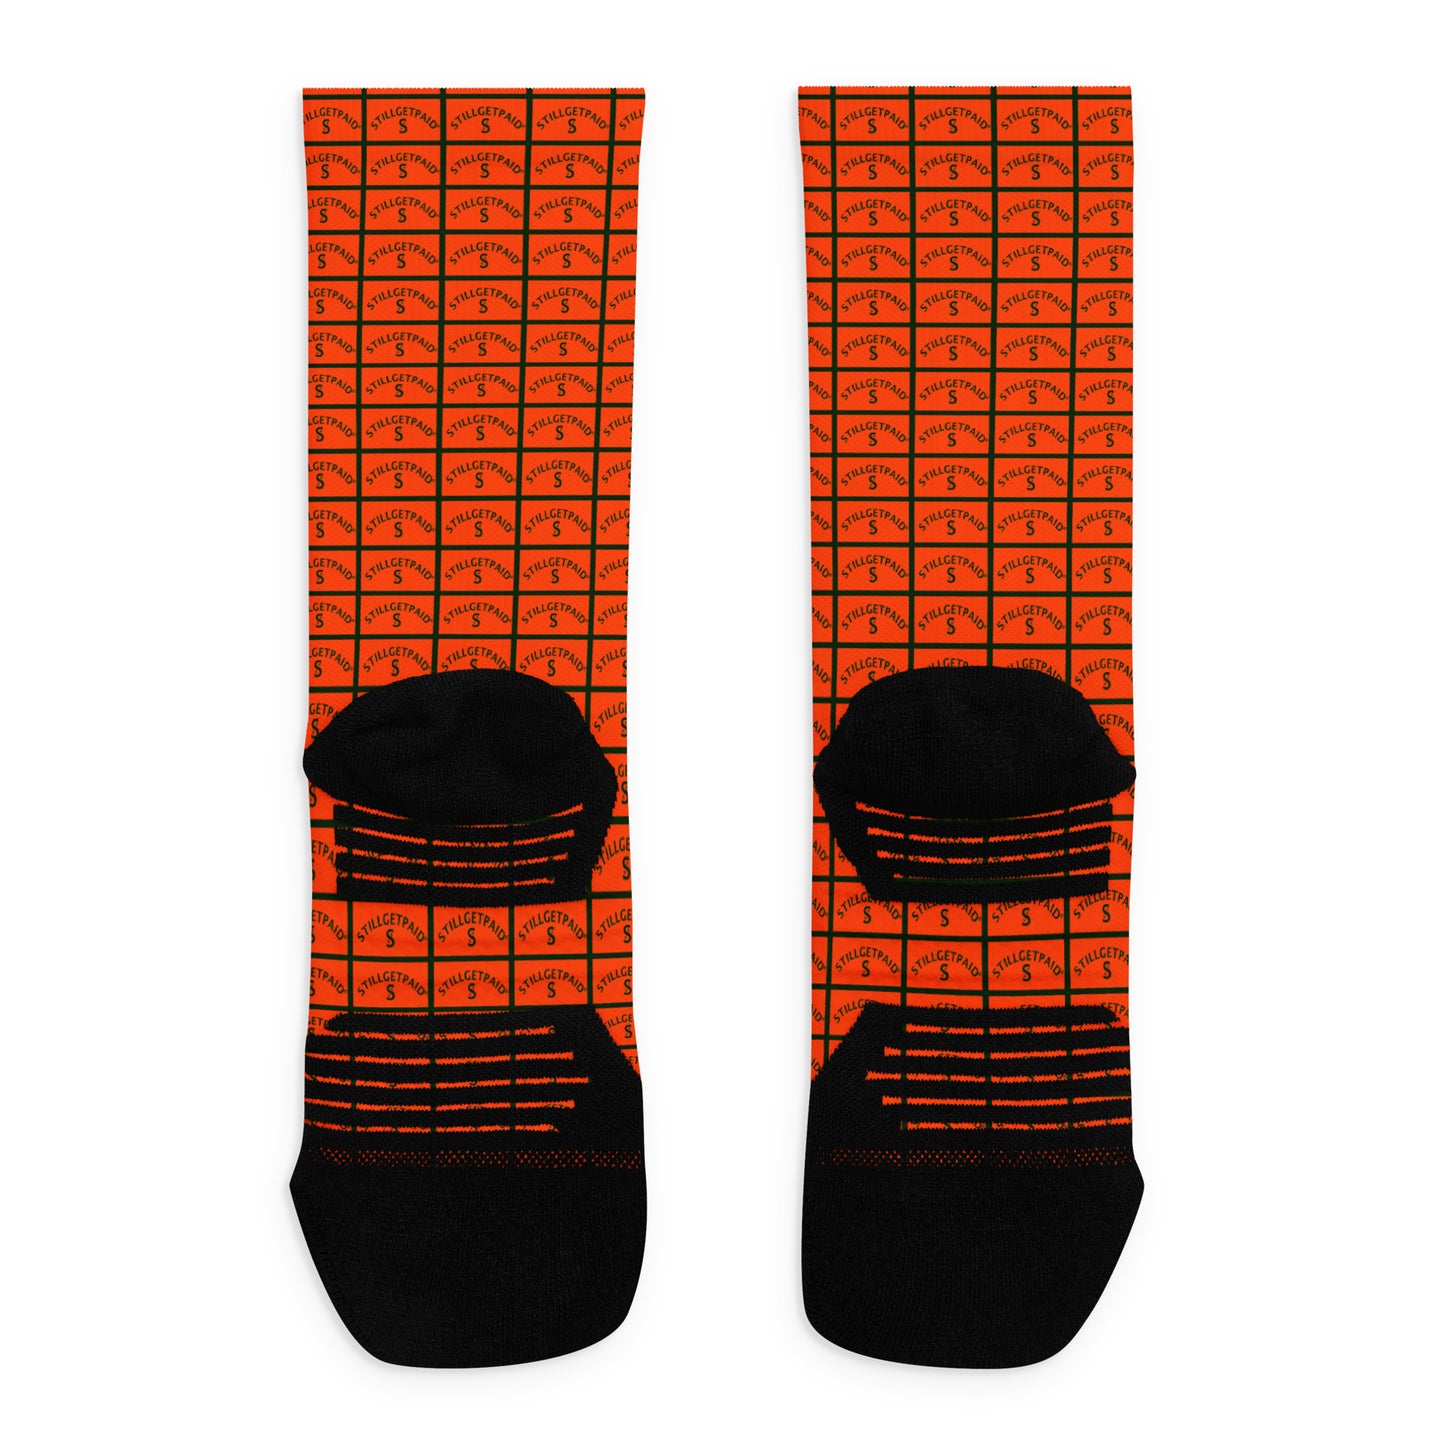 STILLGETPAID® APPAREL Basketball socks